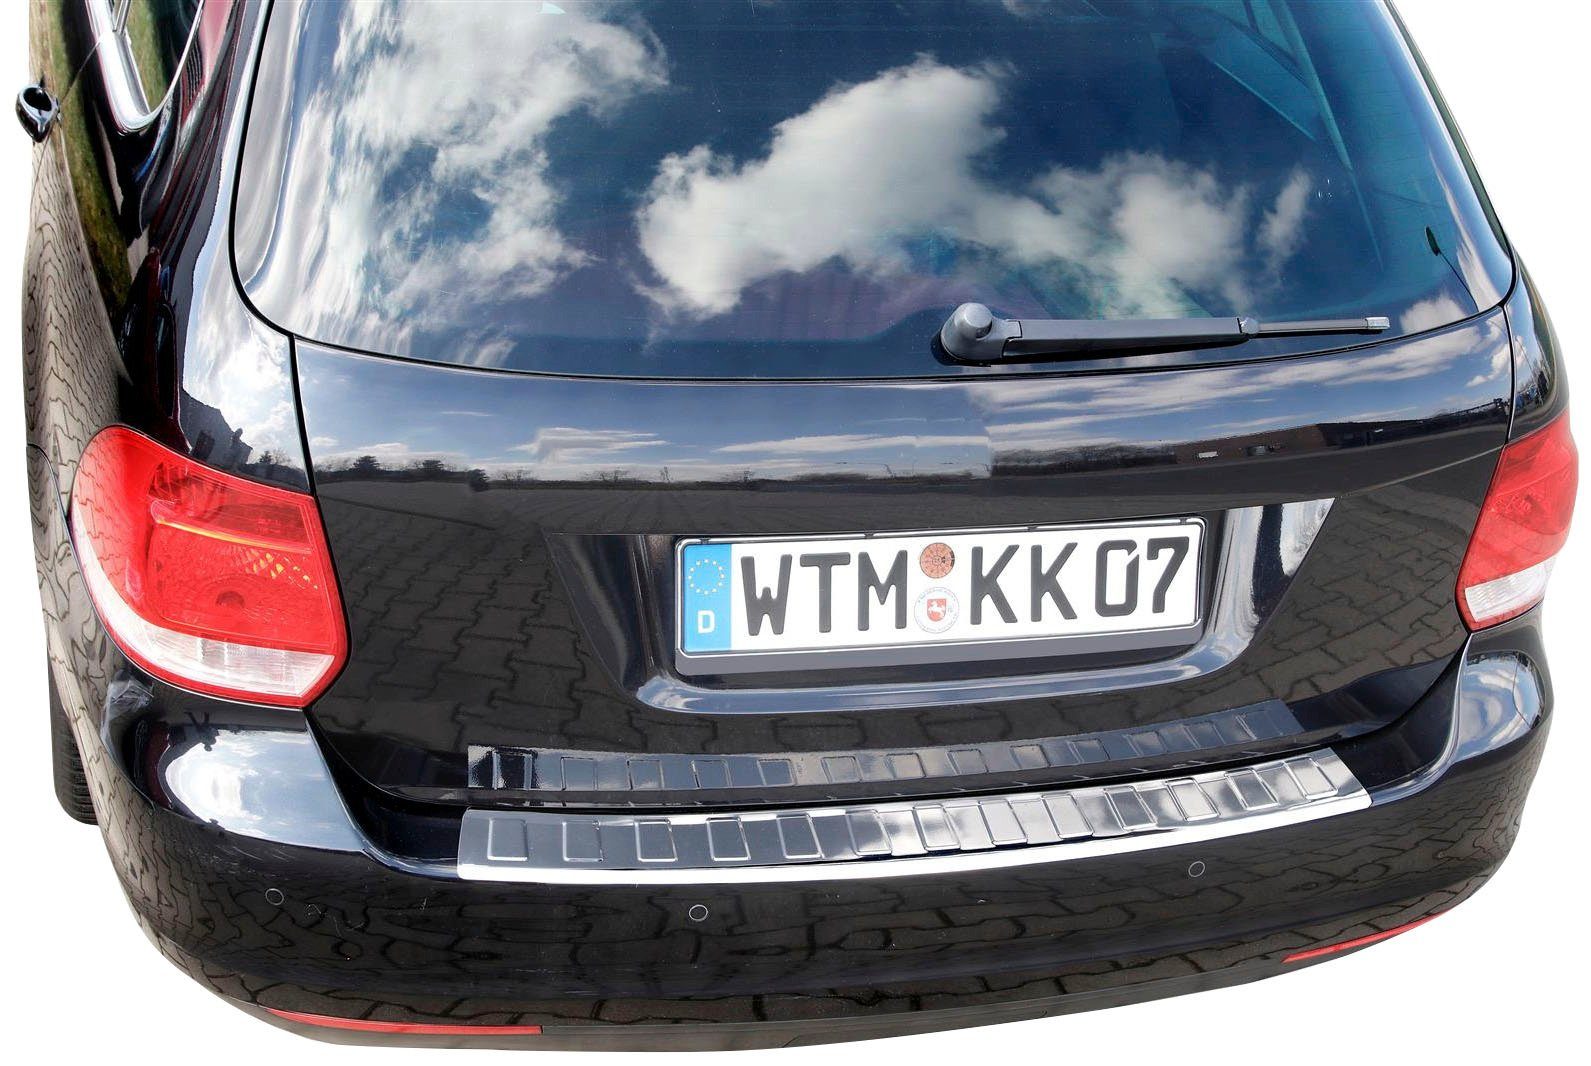 RECAMBO Ladekantenschutz, Zubehör für VW GOLF 5 + GOLF 6 VARIANT, 2007-2013, Edelstahl chrom poliert | Abdeckblenden